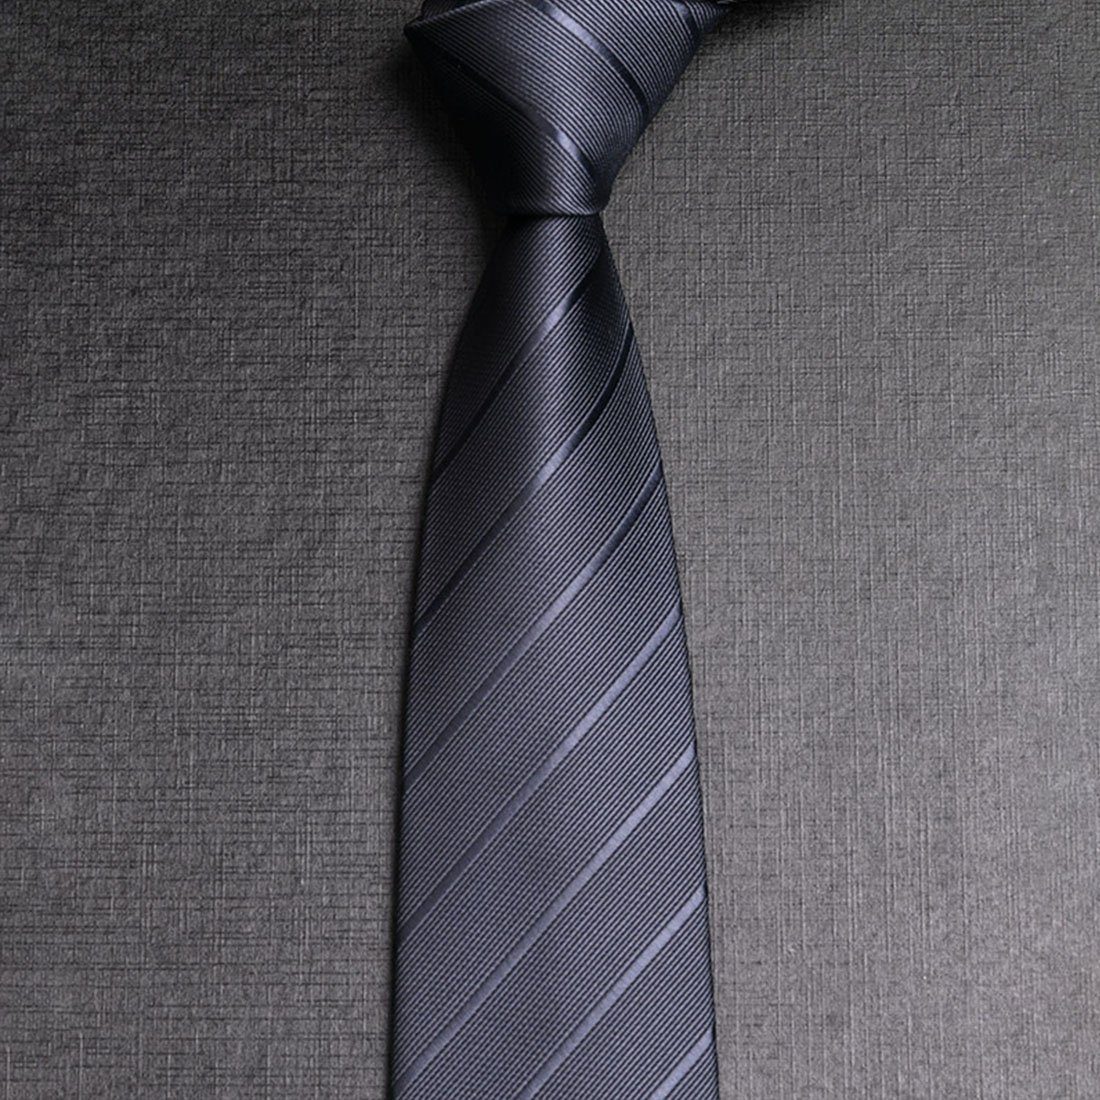 Mnöpf Krawatte Gestreifte Krawatte, Herrenkrawatte, für Hemden und Anzüge,  1 Stk